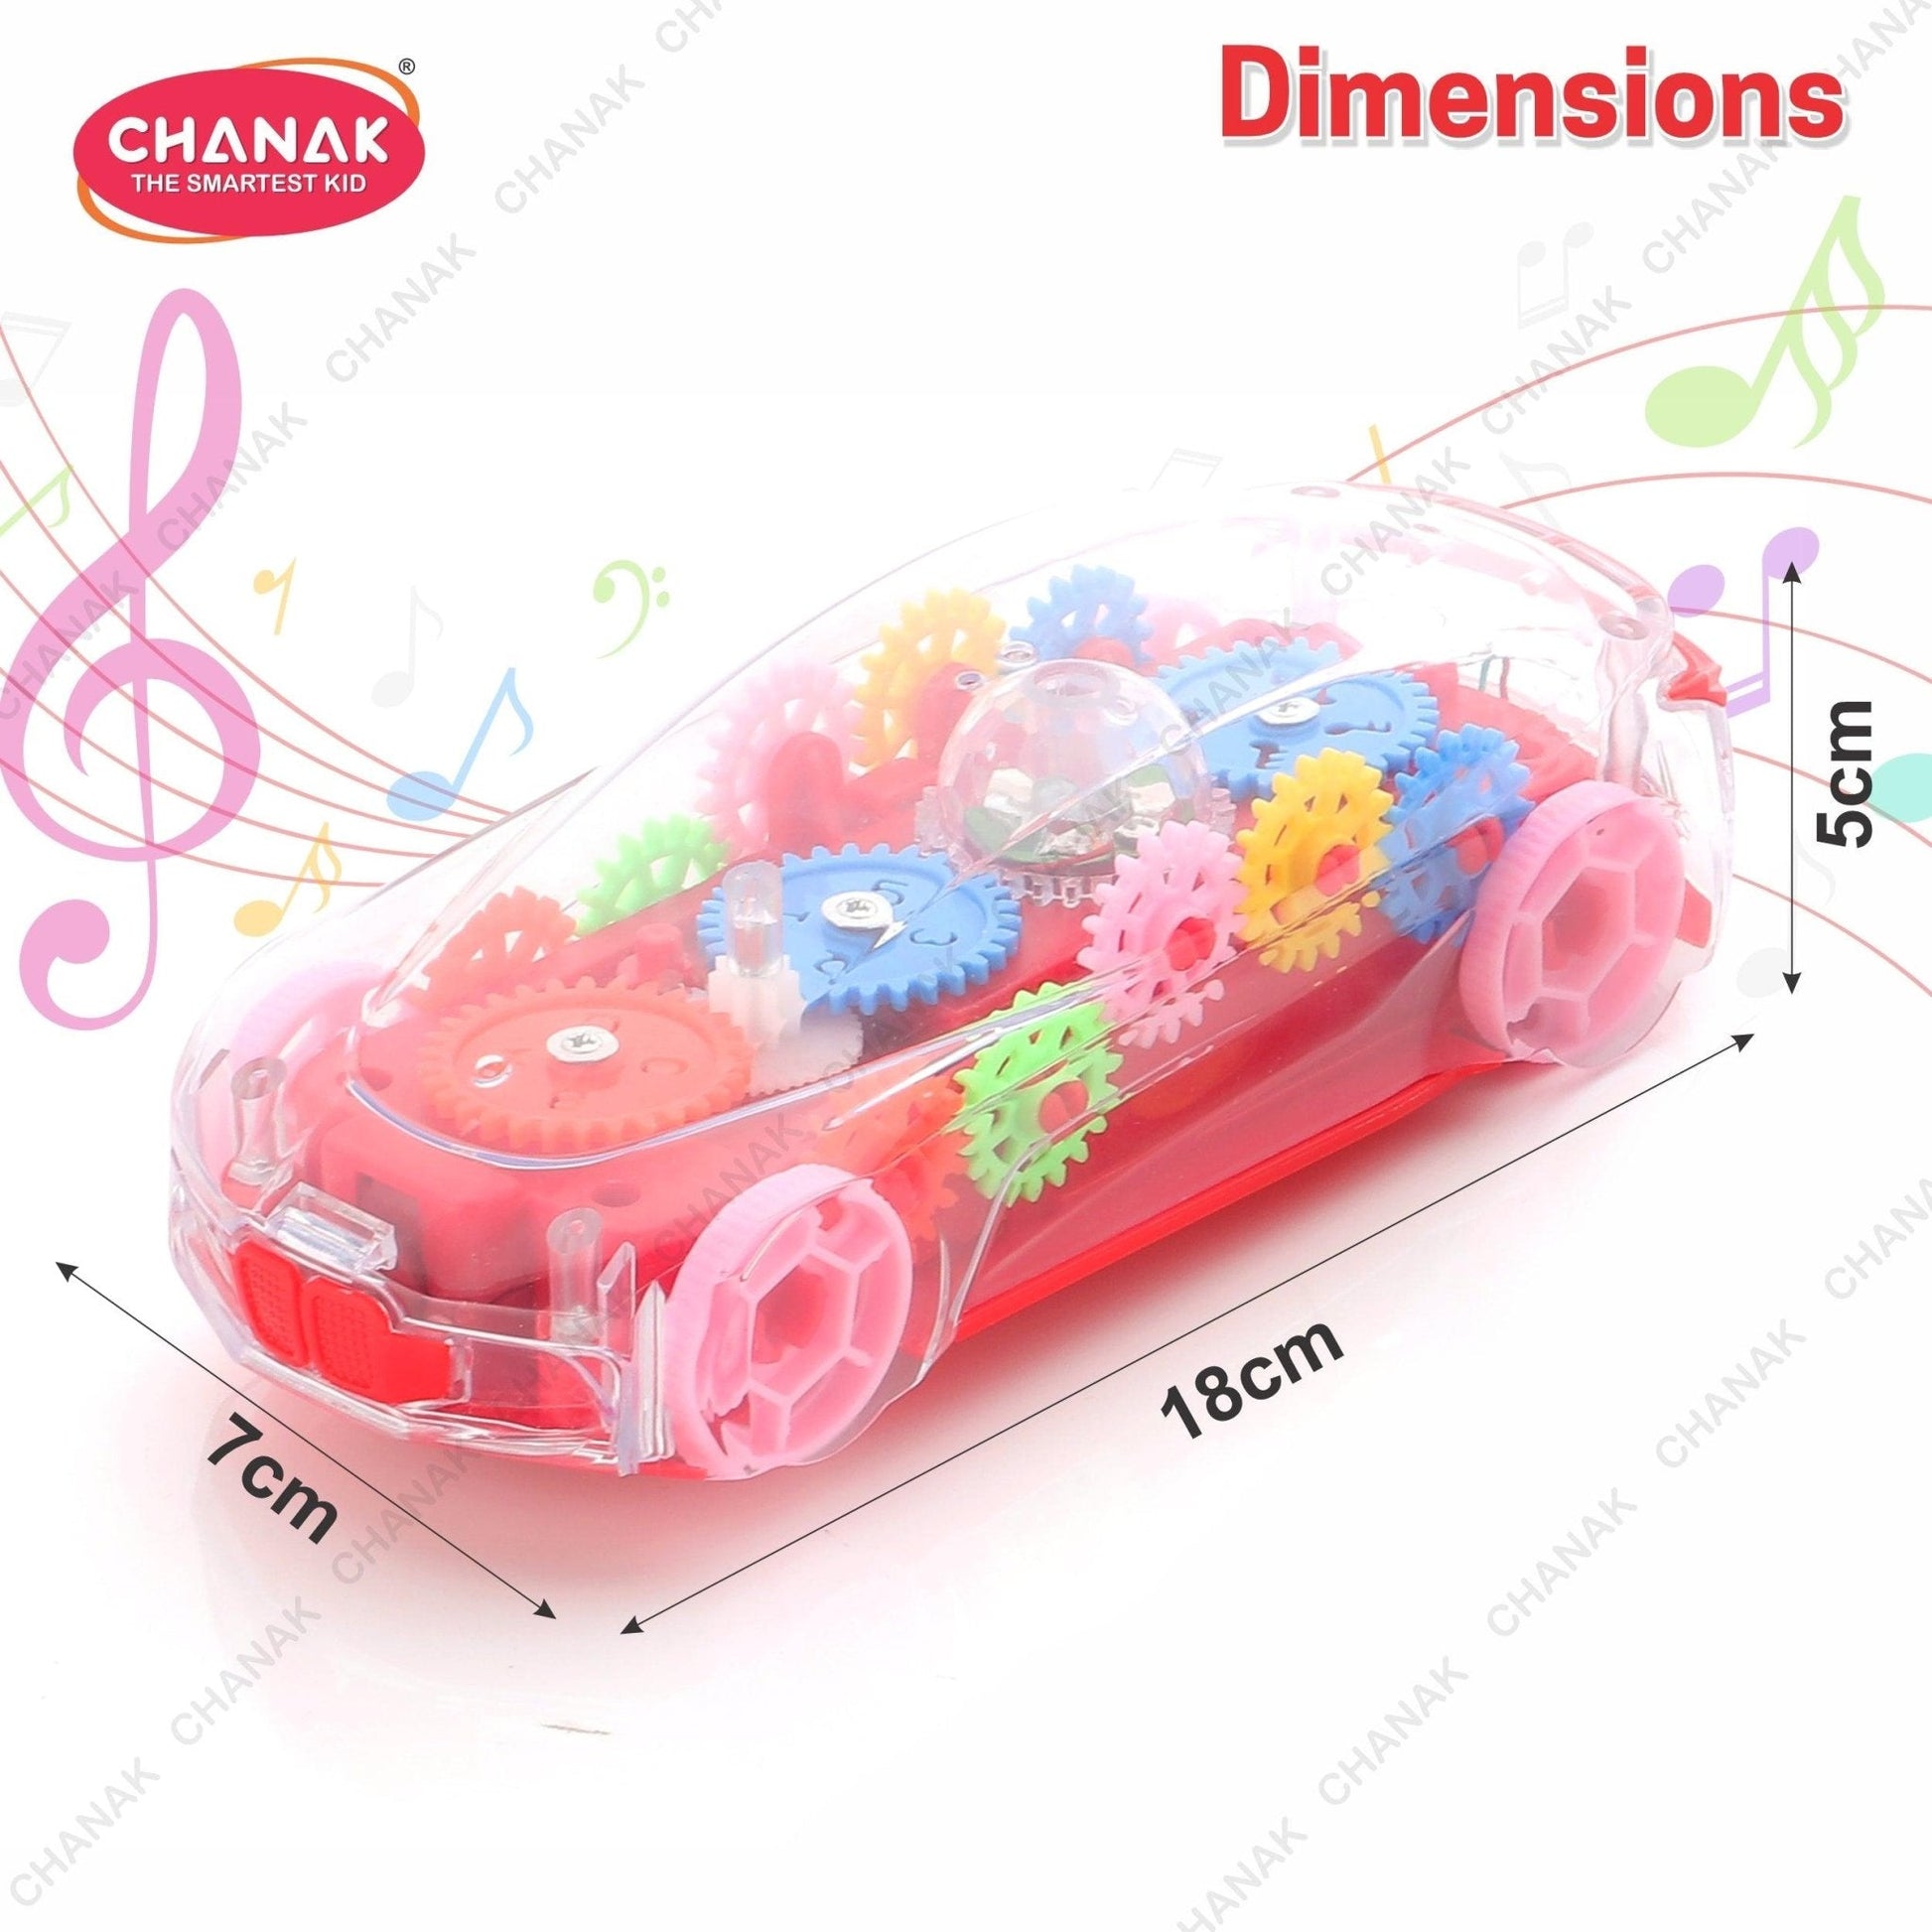 Chanak Transparent 3D Gear Car for Kids (Red) - chanak